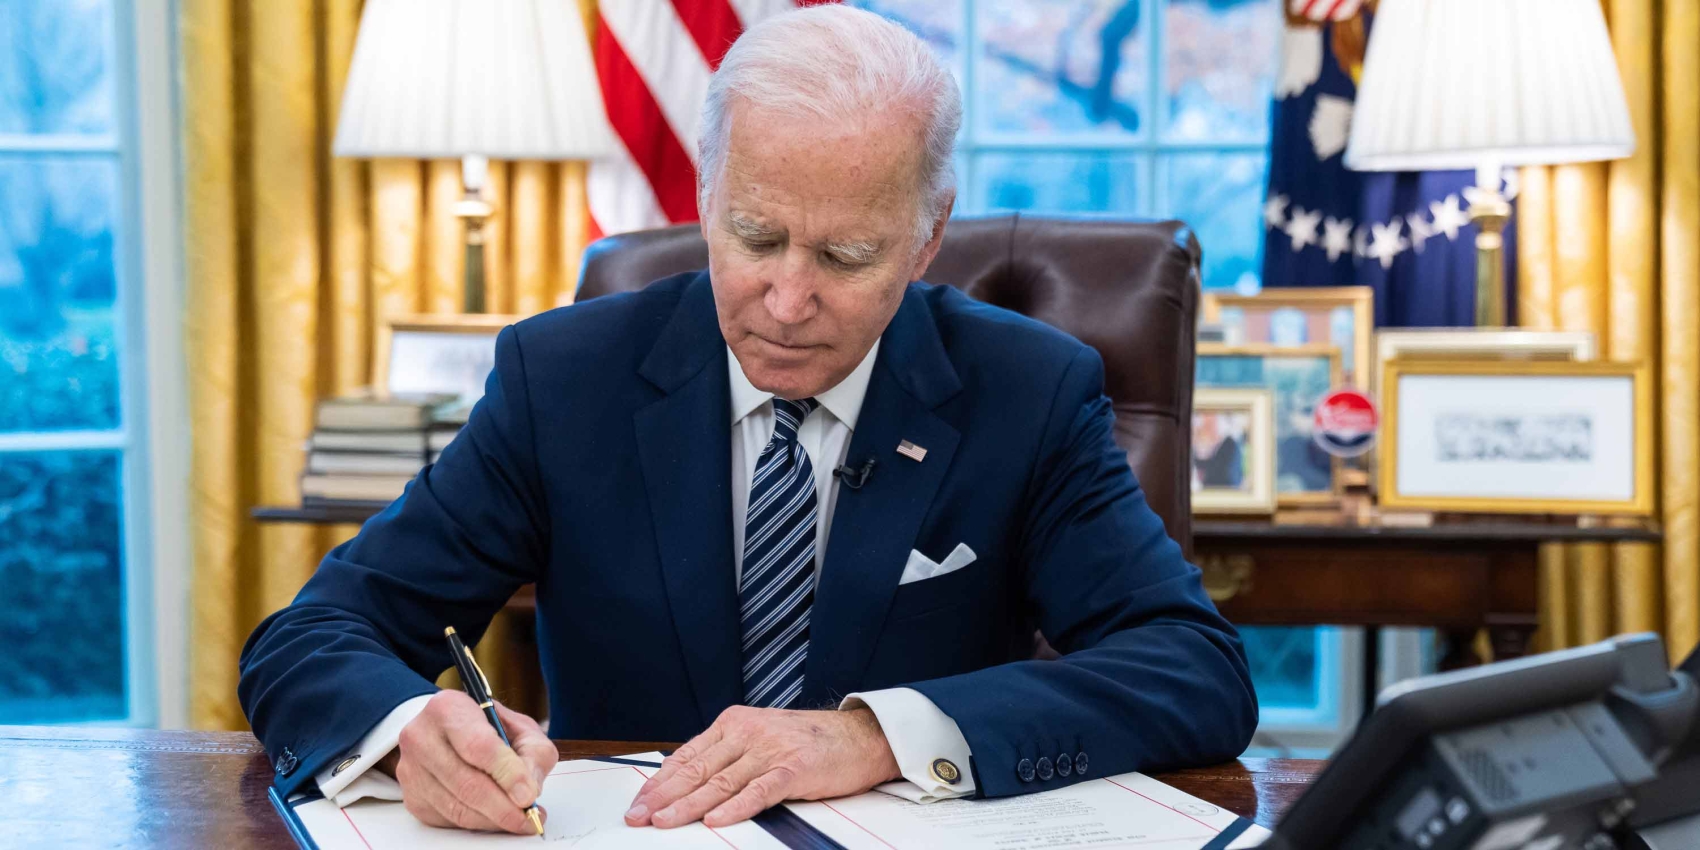 Präsident Biden beim Unterzeichnen